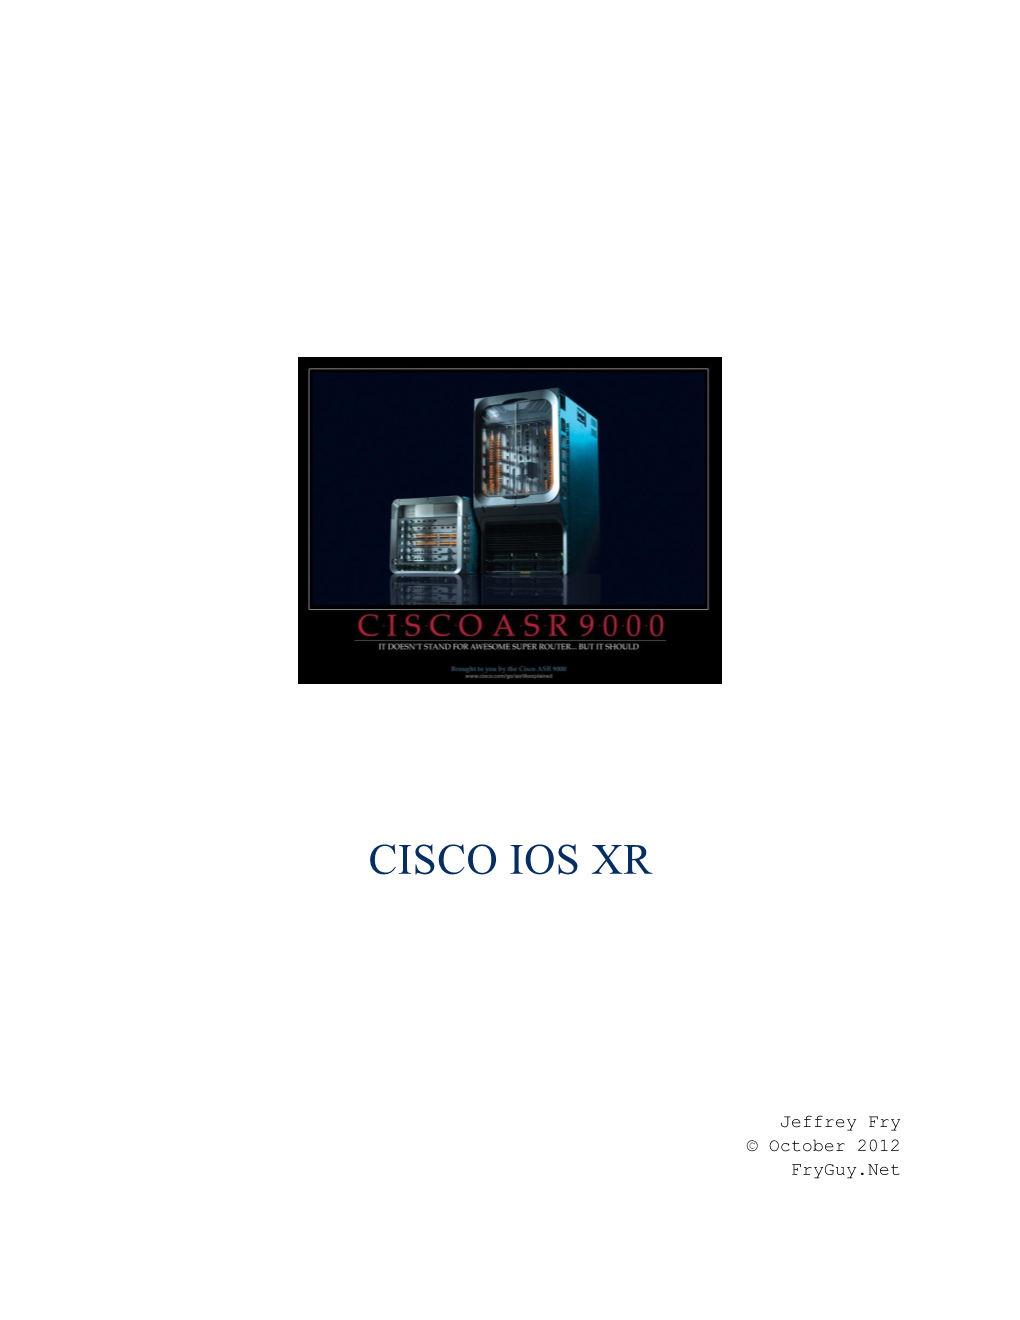 Cisco IOS XR Introduction Ver 1